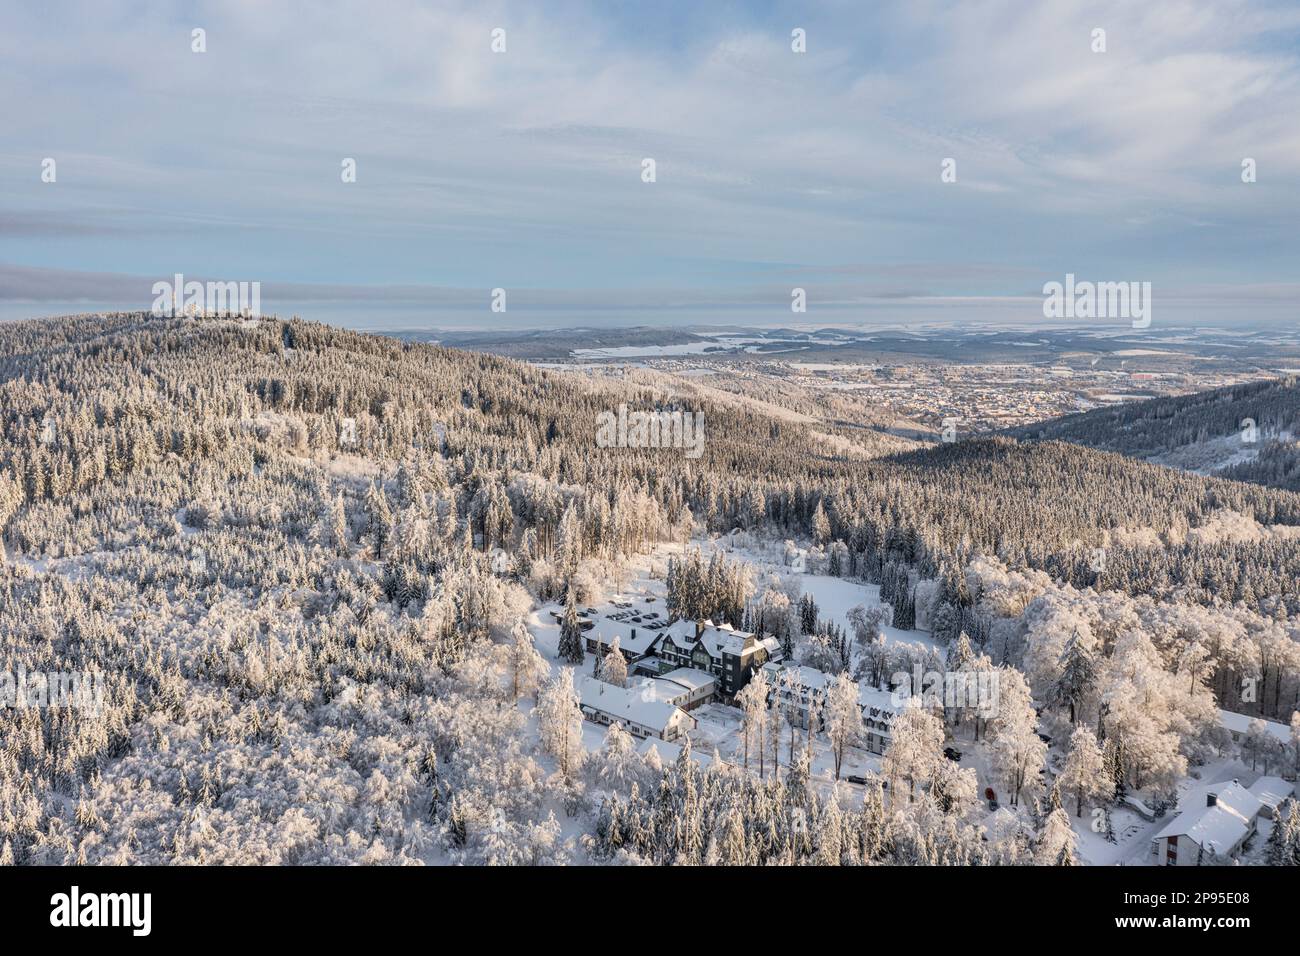 Deutschland, Thüringen, Ilmenau (Hintergrund), Hotel, Gabelbach, Berg Kickelhahn, Wald, eisige Bäume, Schnee, Luftfoto Stockfoto